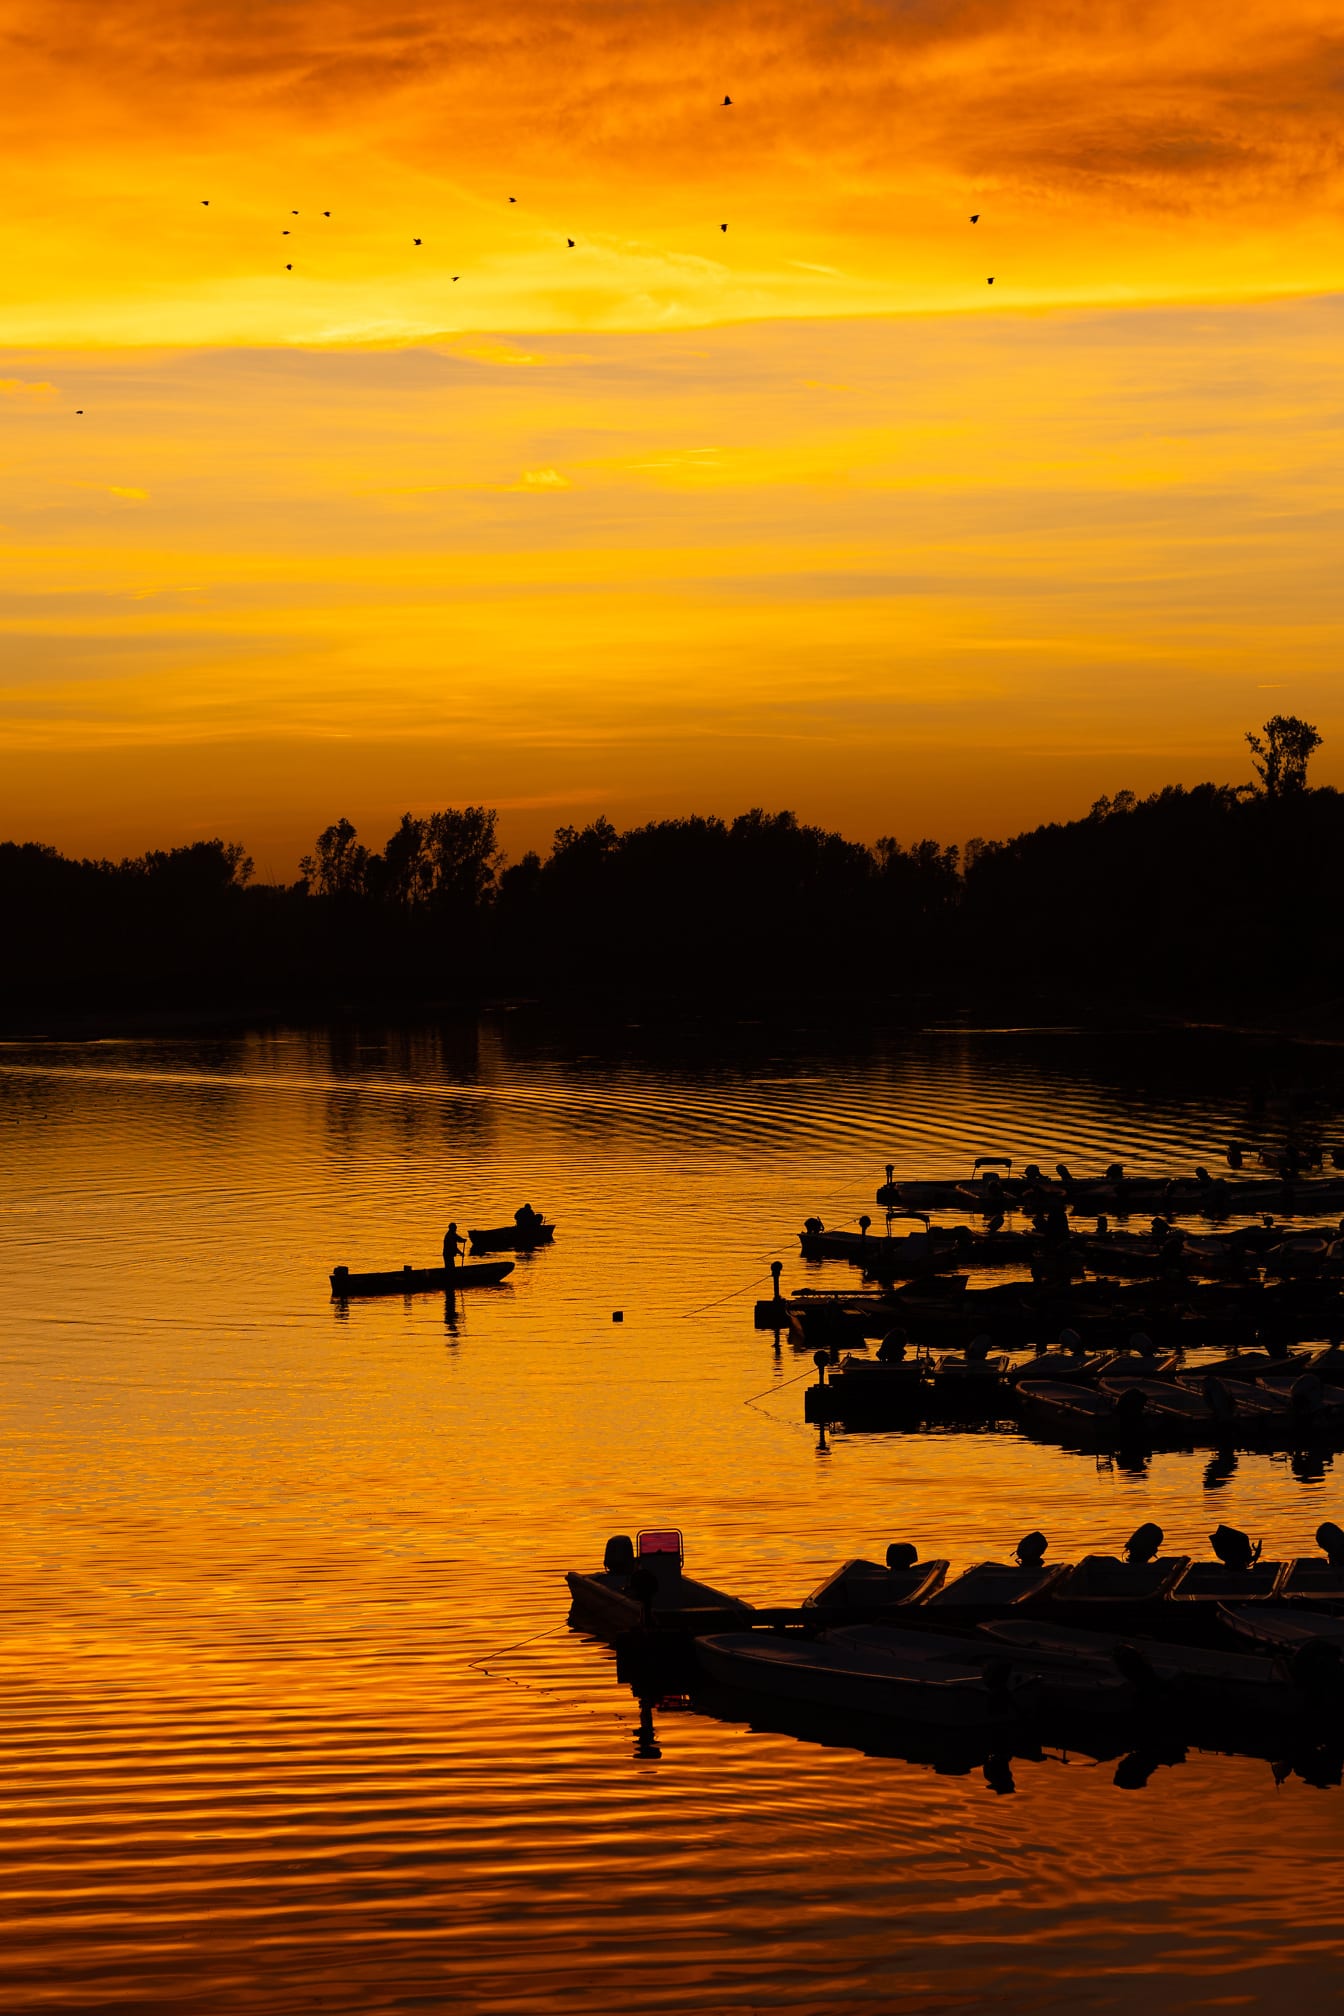 พระอาทิตย์ตกสีเหลืองอมส้มสดใสพร้อมภาพเงาของเรือในท่าเรือ